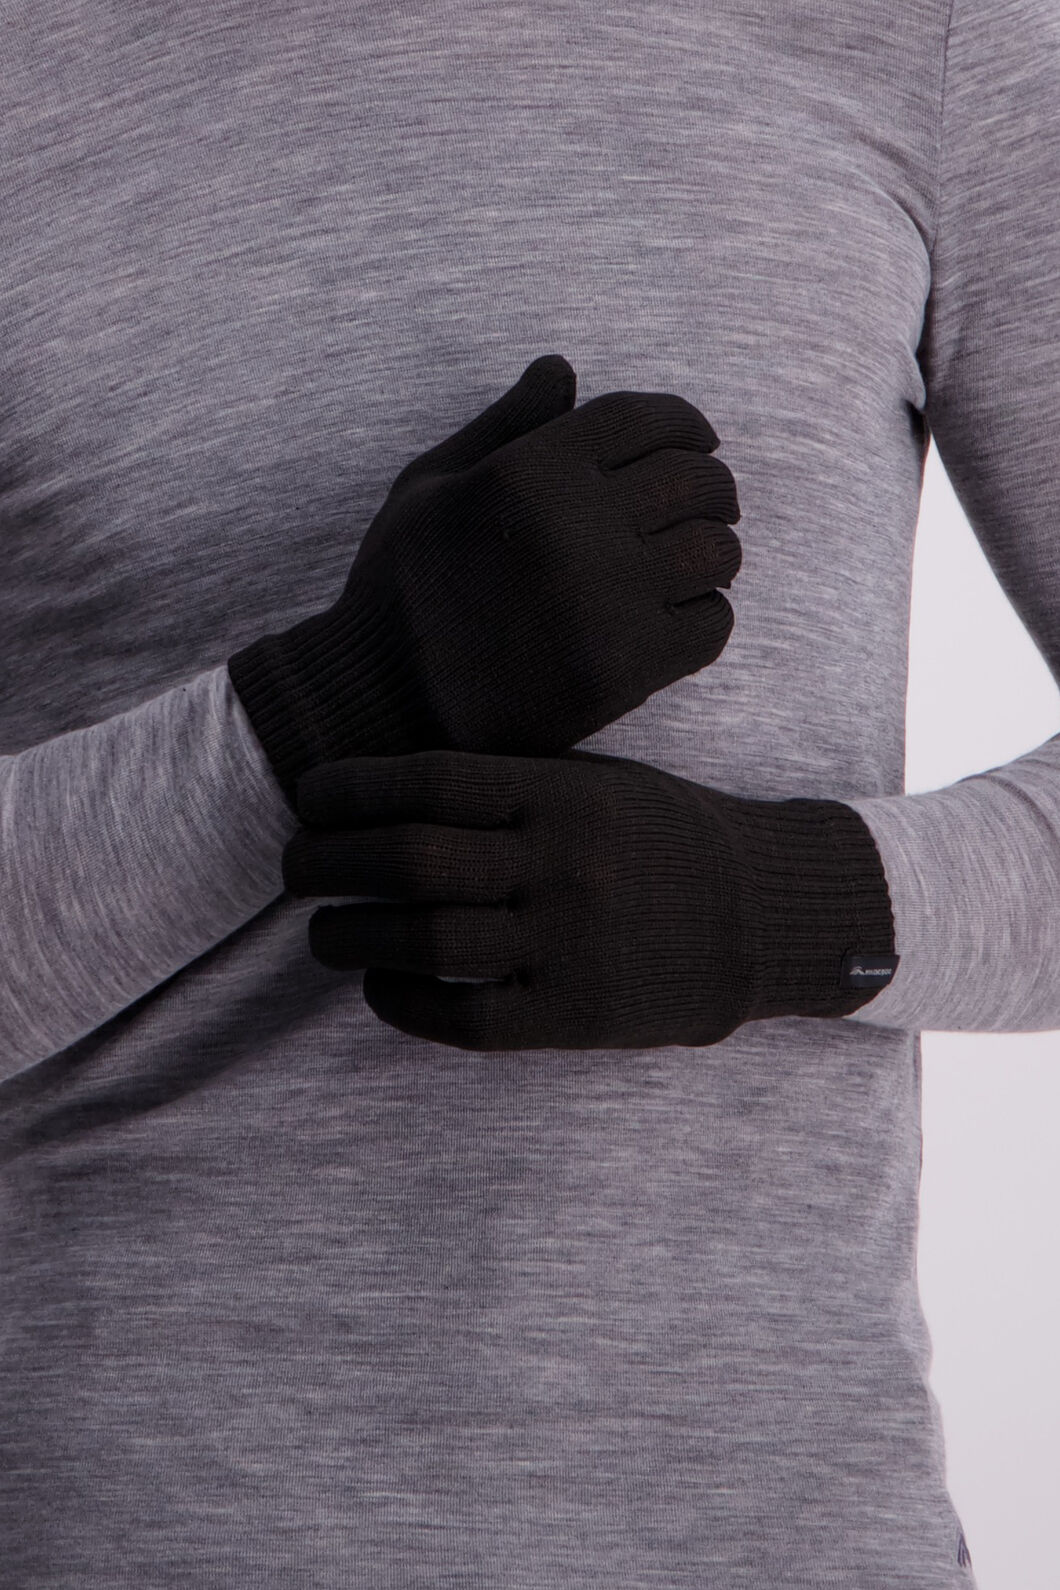 Macpac Tech Wool Gloves